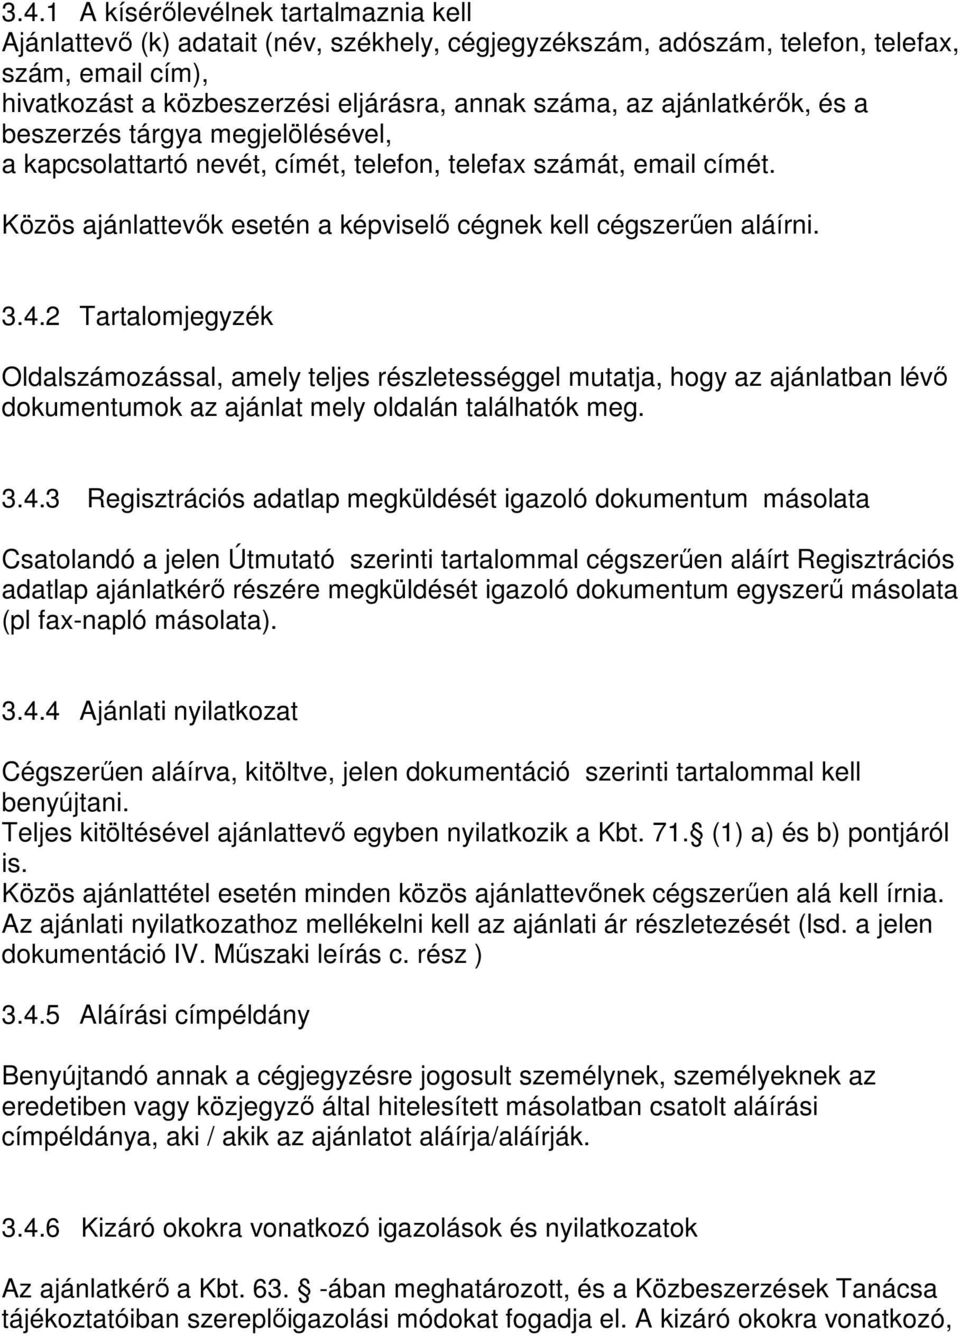 2 Tartalomjegyzék Oldalszámozással, amely teljes részletességgel mutatja, hogy az ajánlatban lévı dokumentumok az ajánlat mely oldalán találhatók meg. 3.4.